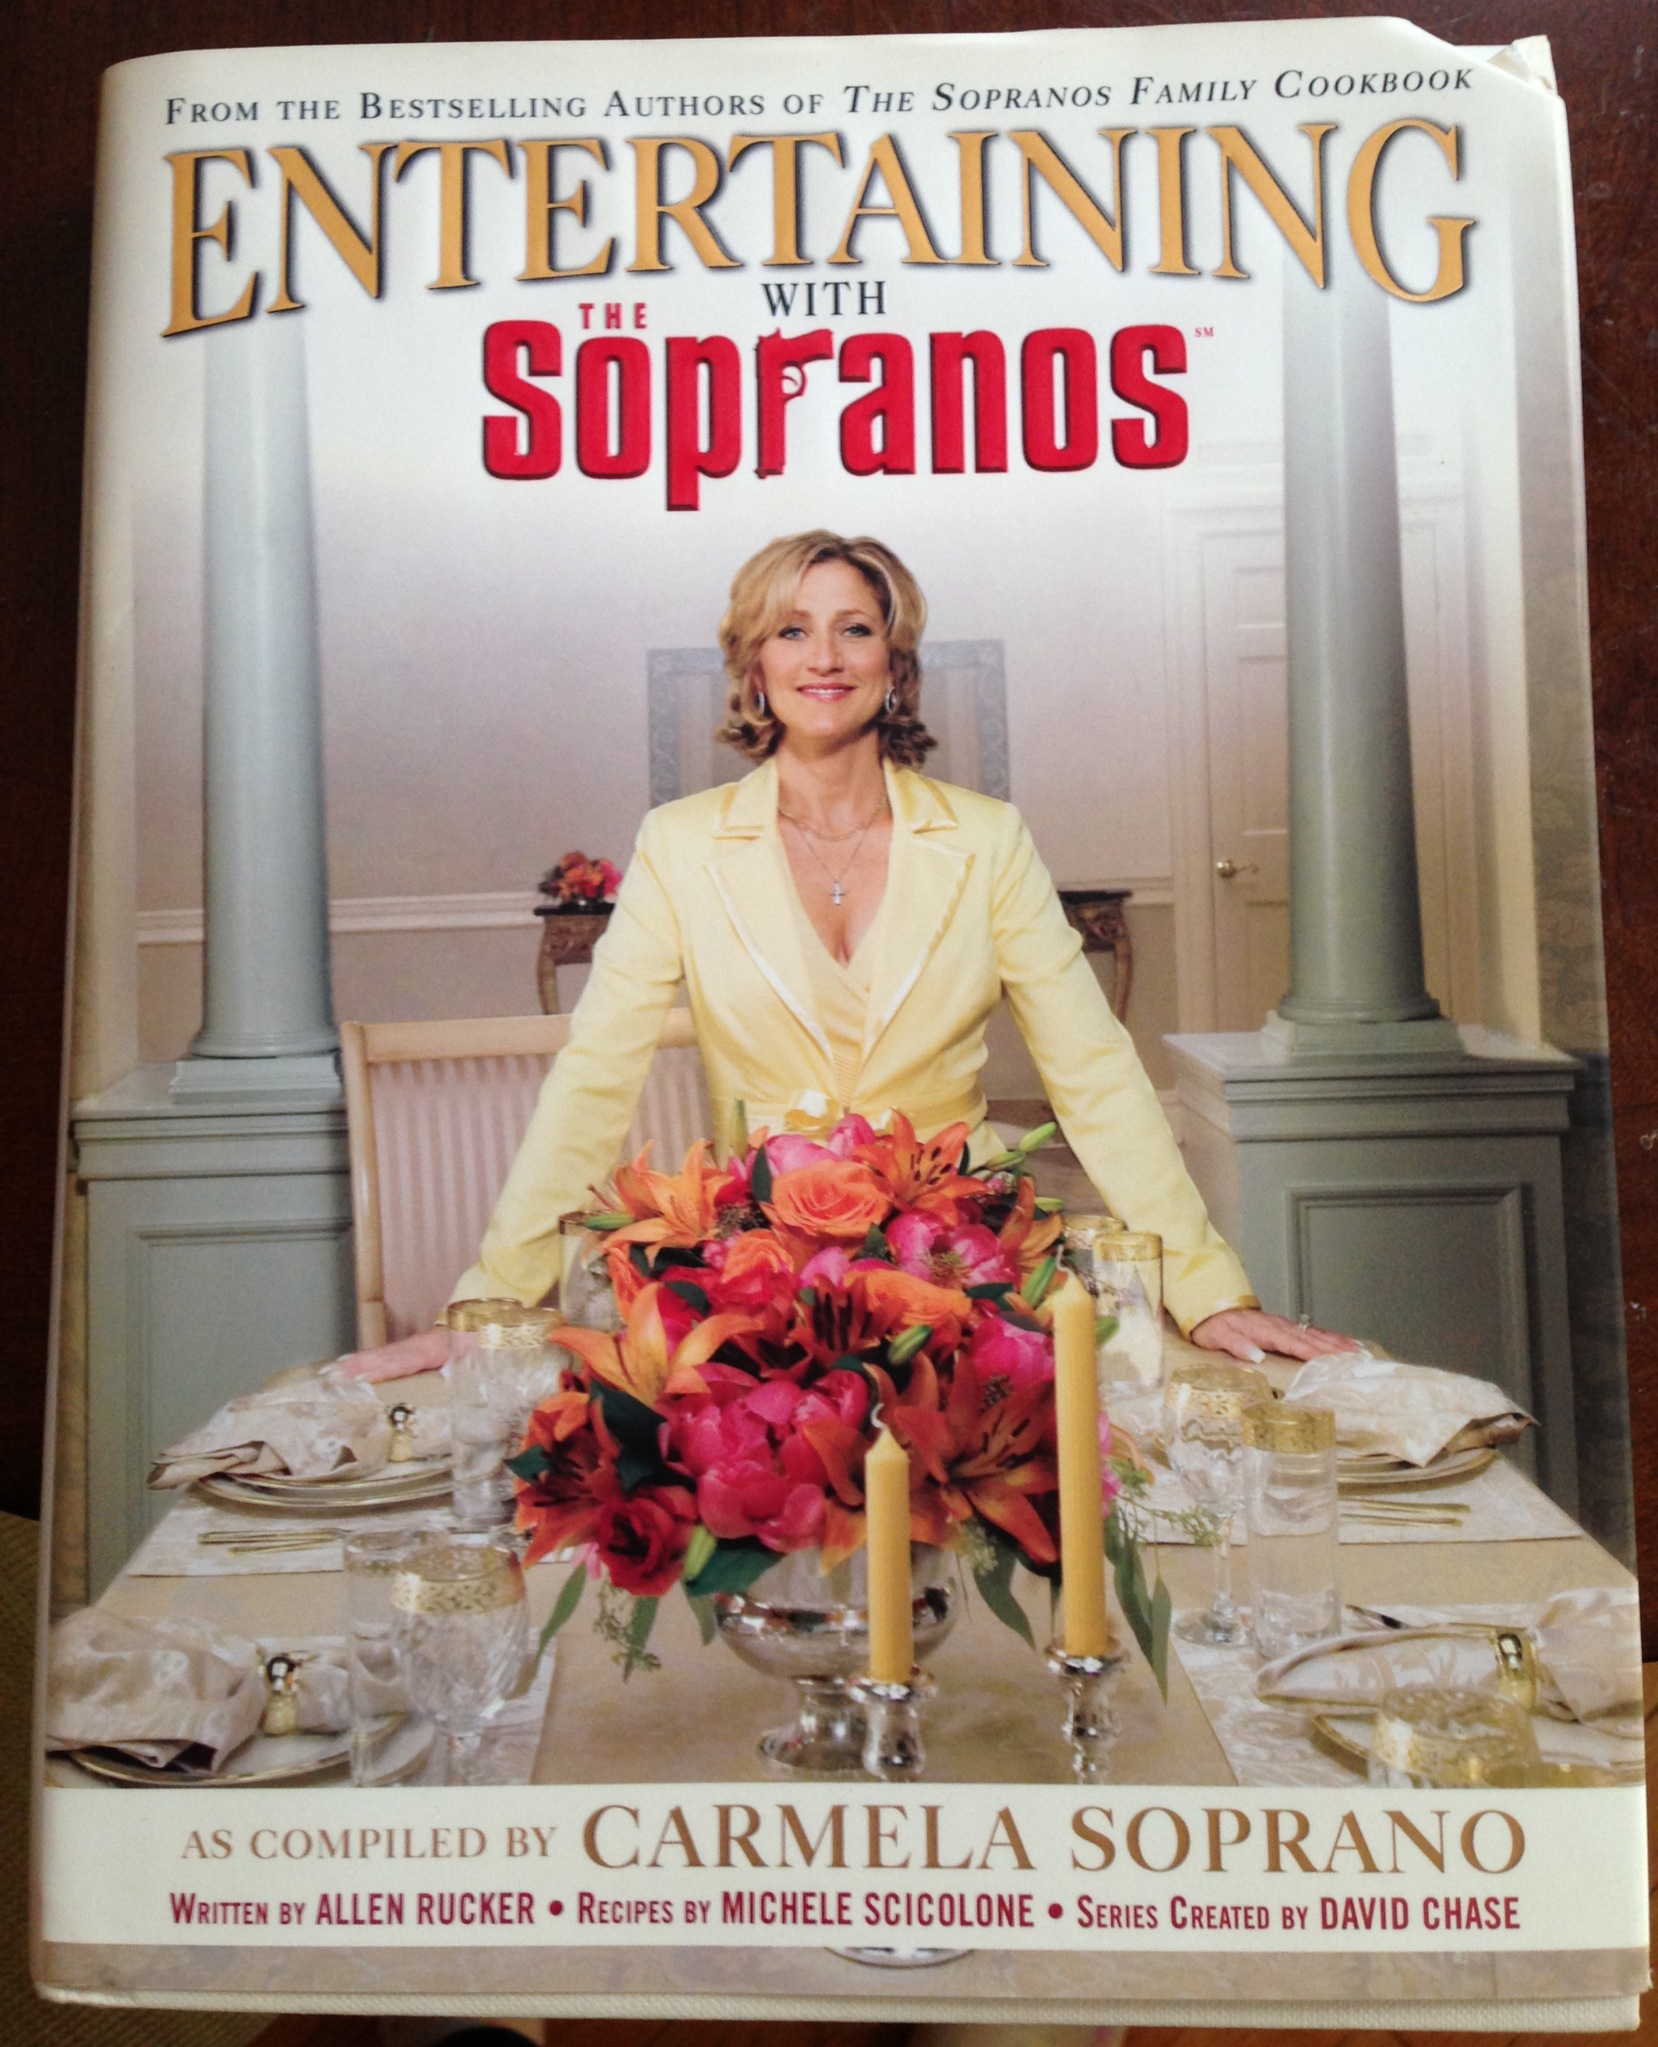 Sopranos Cookbook